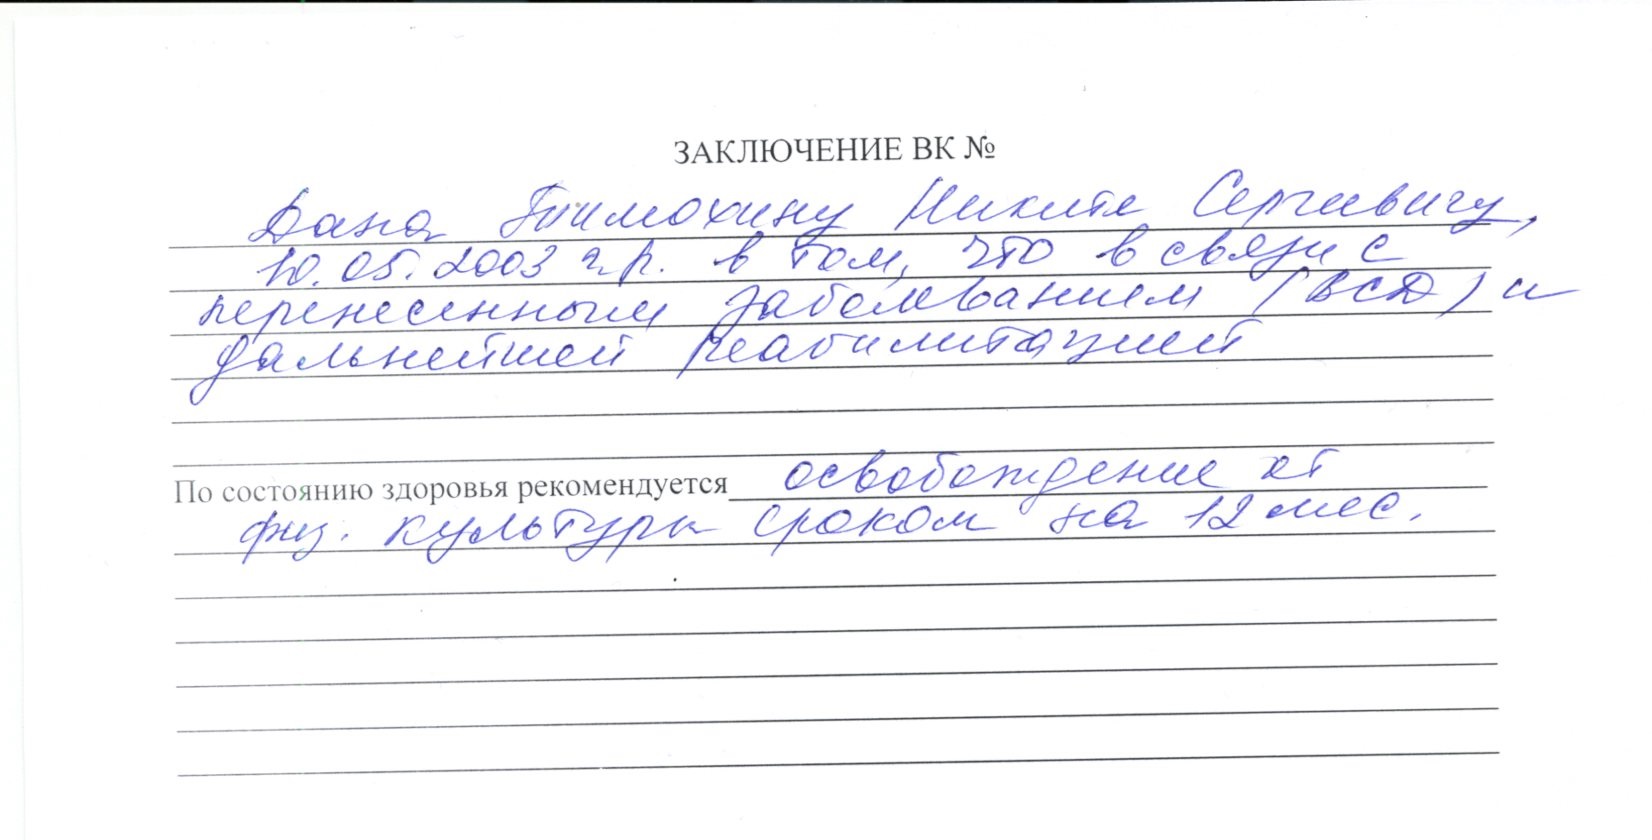 Где Купить Справку В Новосибирске